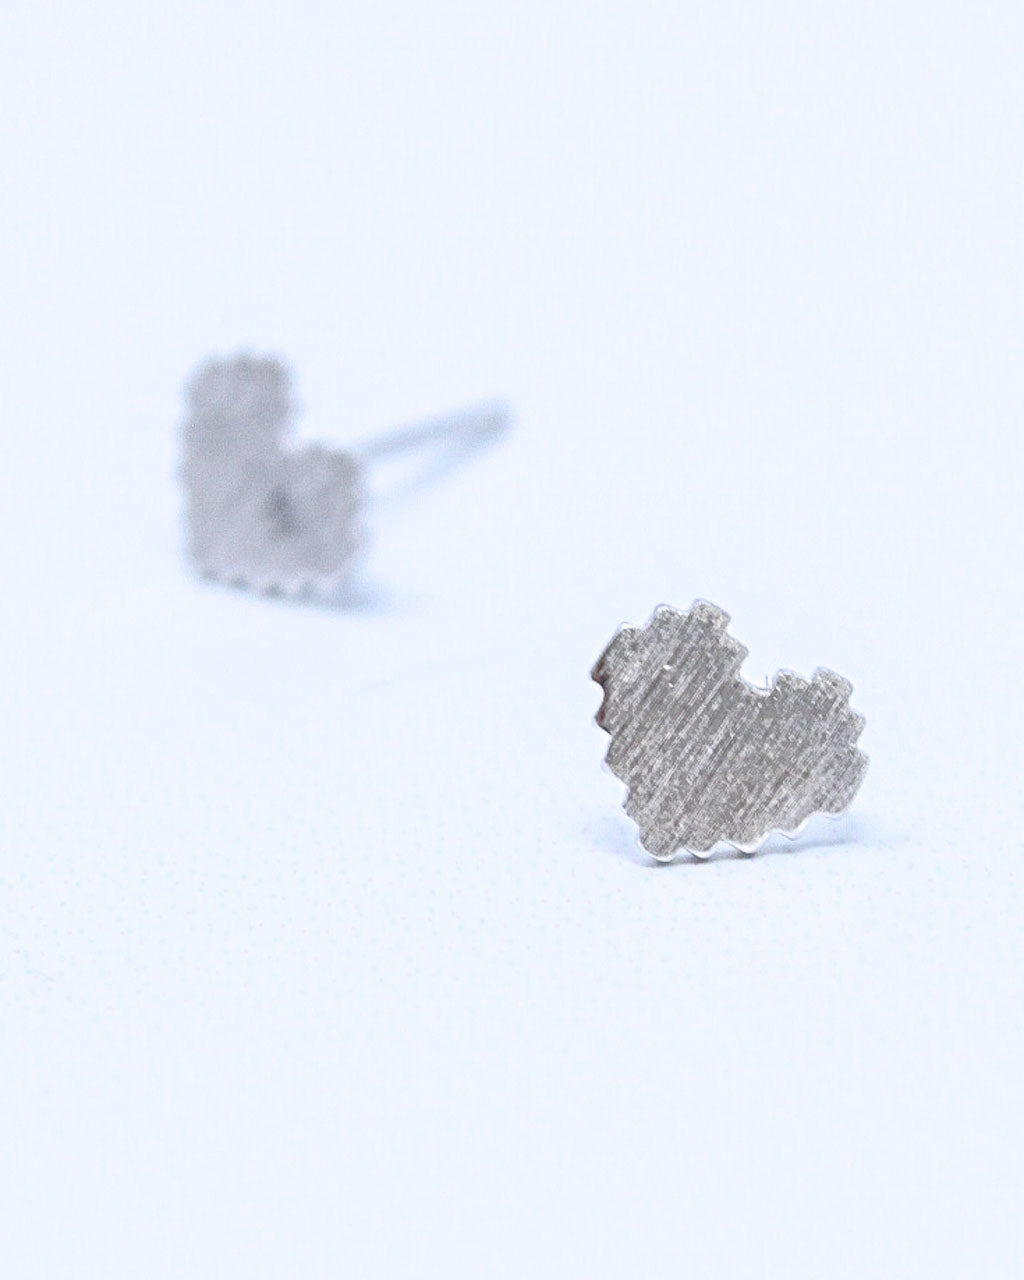 Pixel Heart Earrings